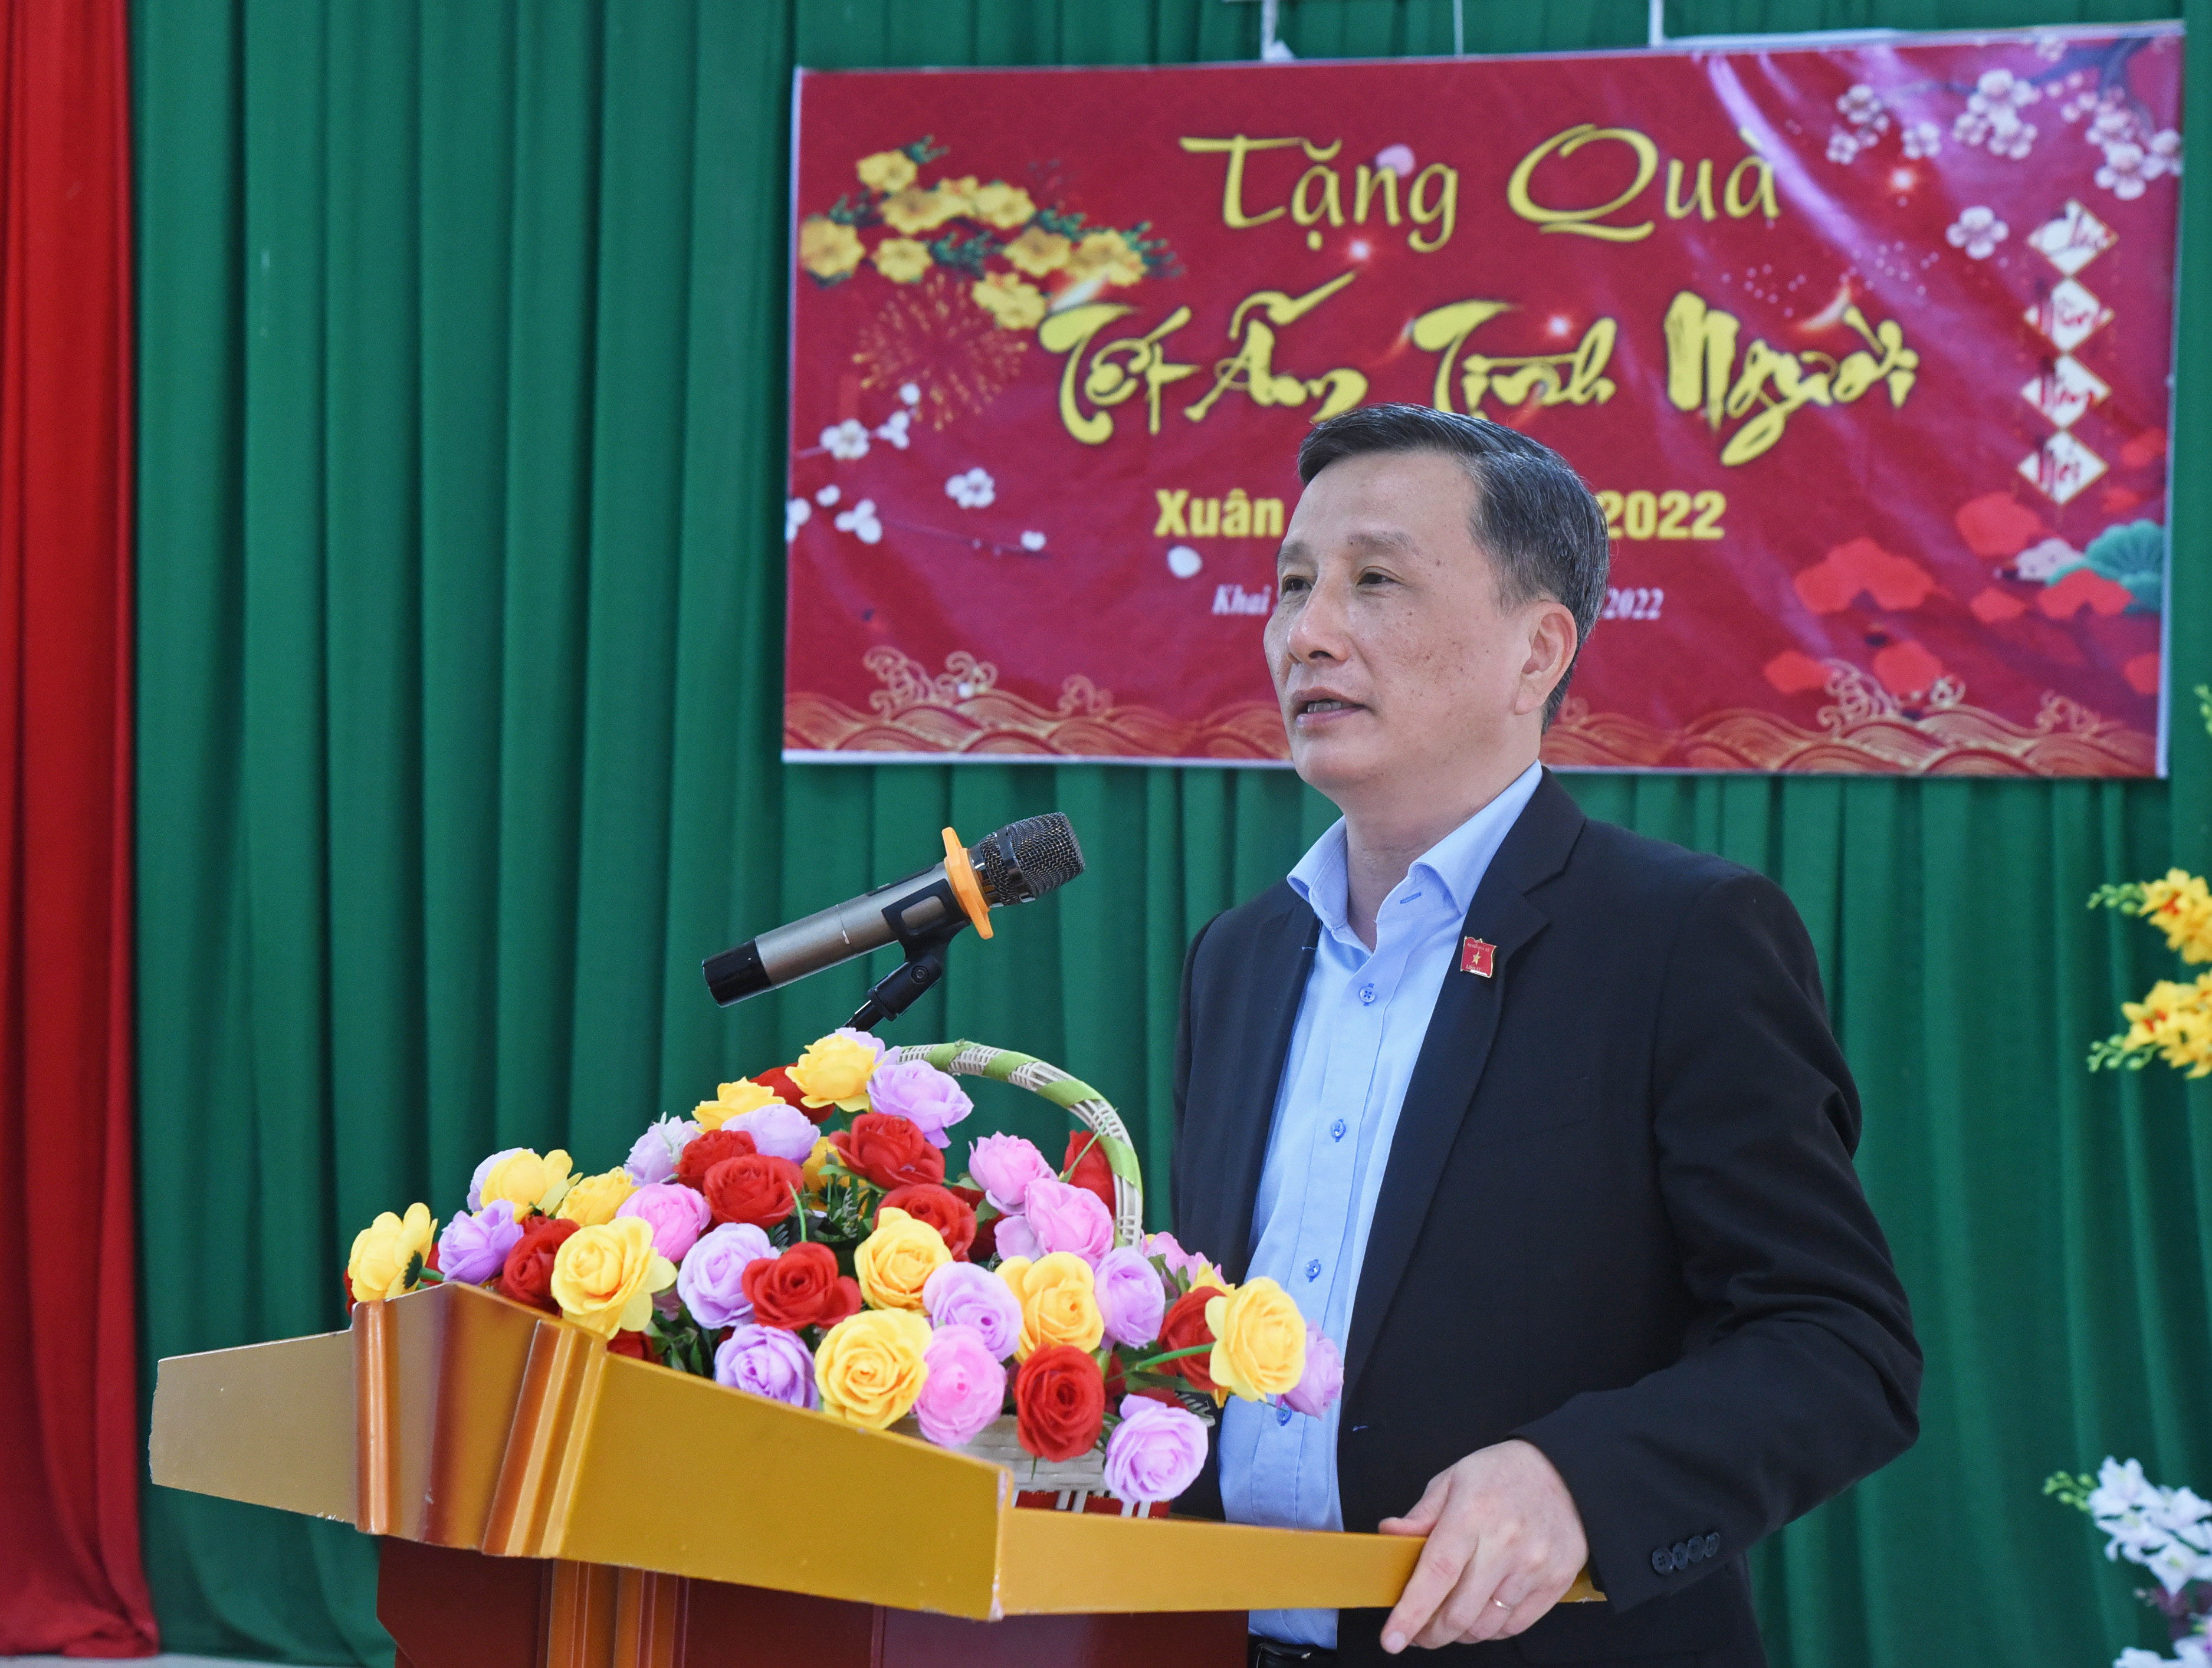 Đồng chí Lê Quang Huy phát biểu, chúc Tết và động viên các hộ nghèo, hộ khó khăn nỗ lực vượt lên hoàn cảnh, nhất là trong bối cảnh dịch bệnh hiện nay. Ảnh: T.G